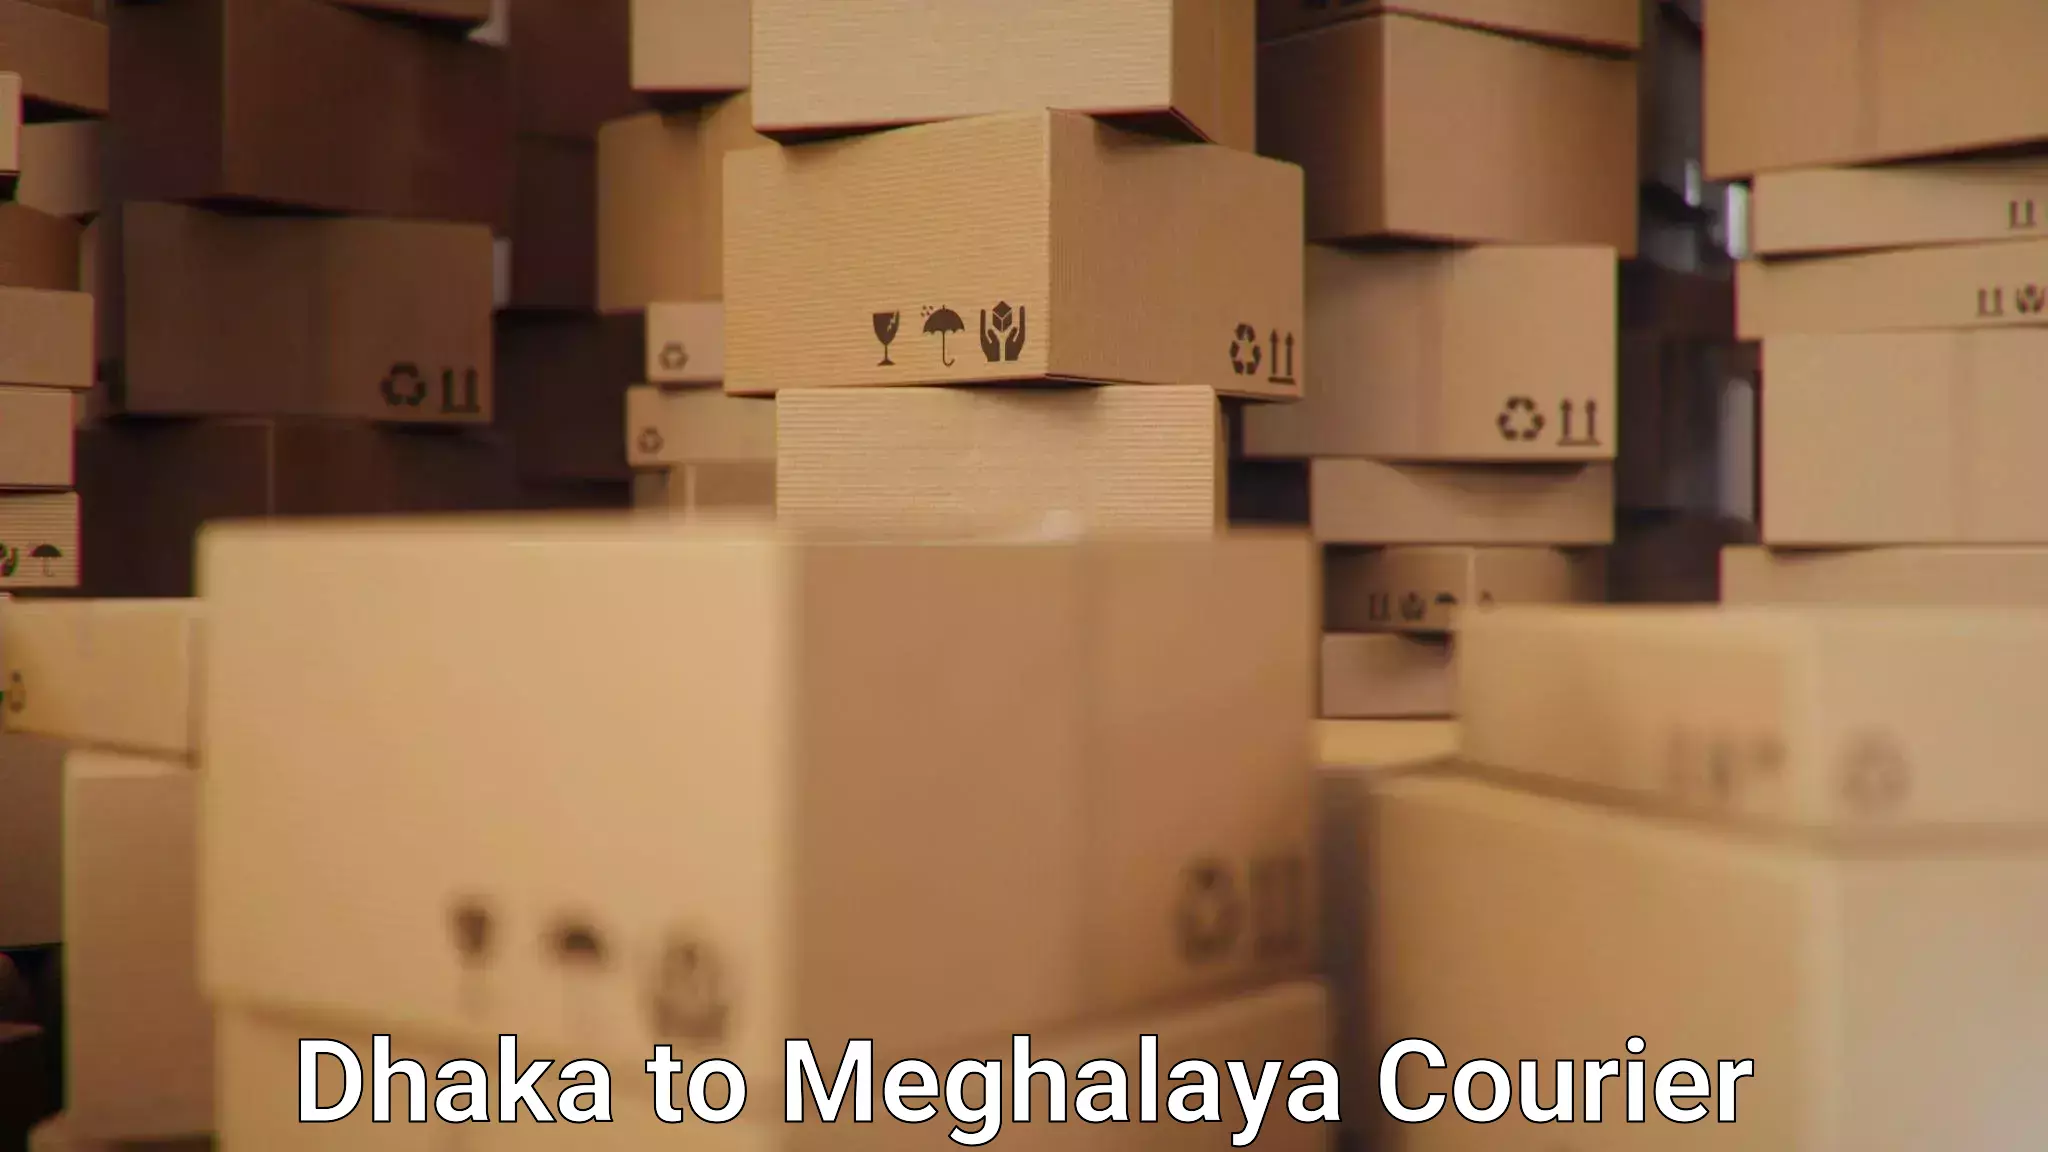 Multi-carrier shipping Dhaka to Meghalaya